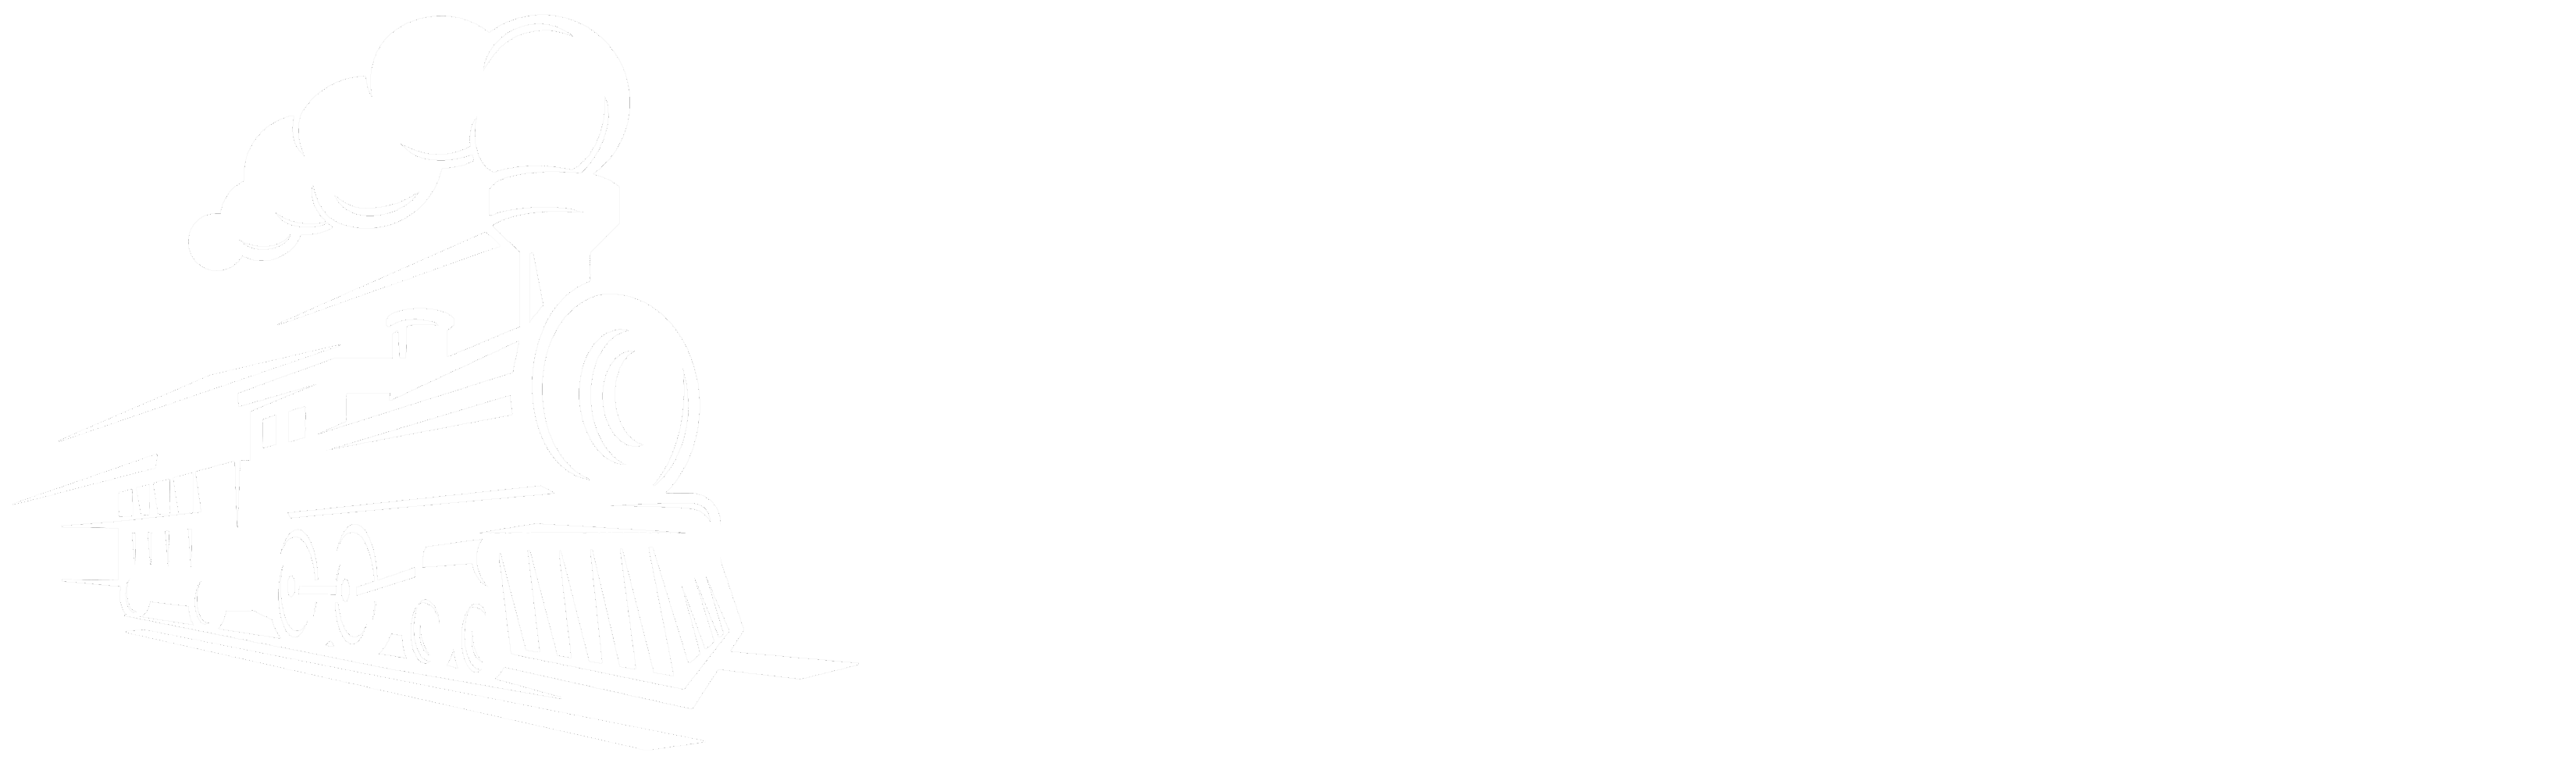 Chuff Chuff